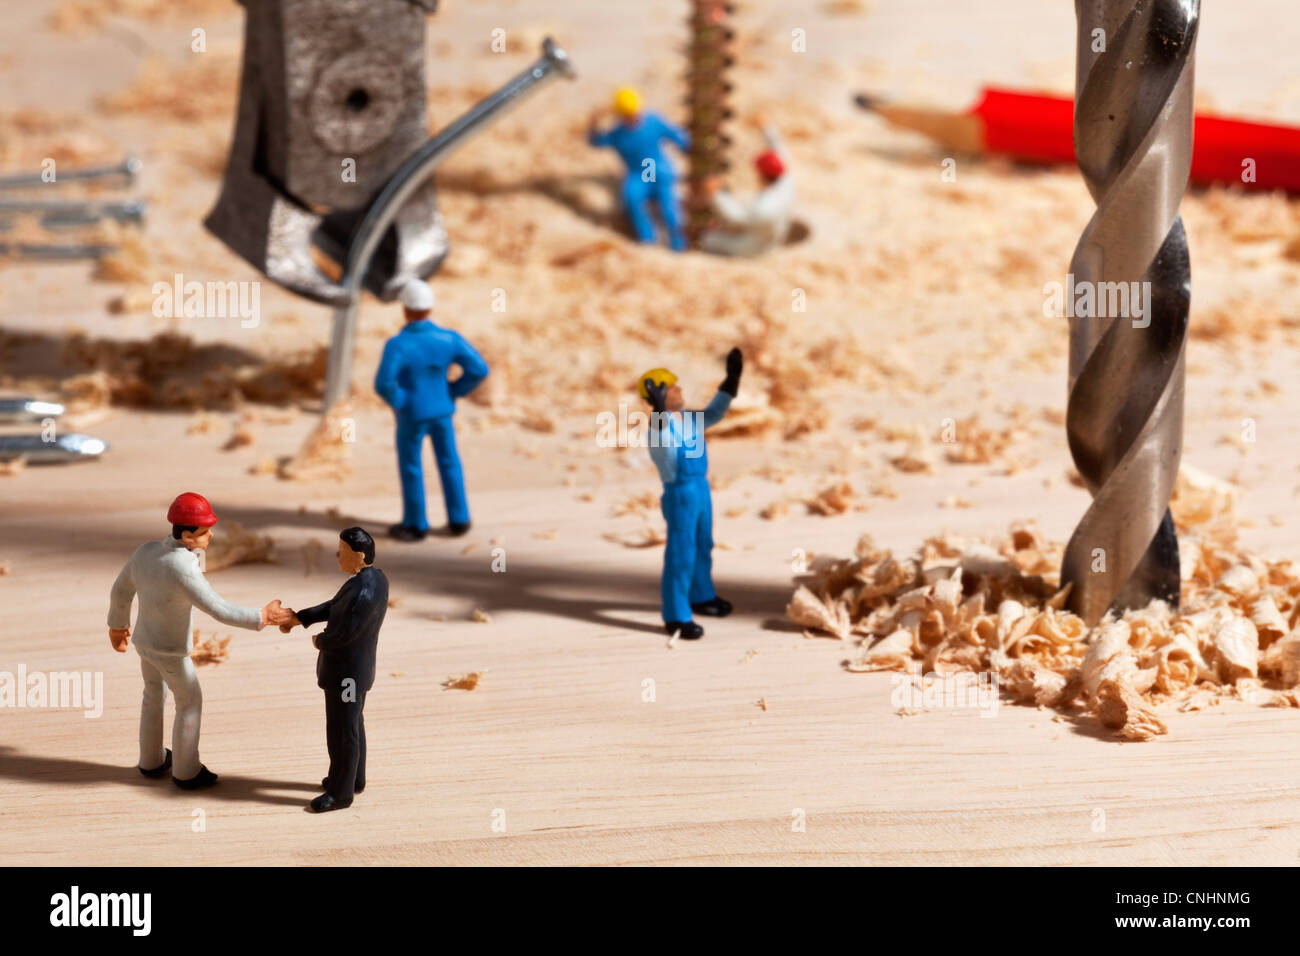 Un diorama d'un site de construction miniature, contremaître lobby Banque D'Images